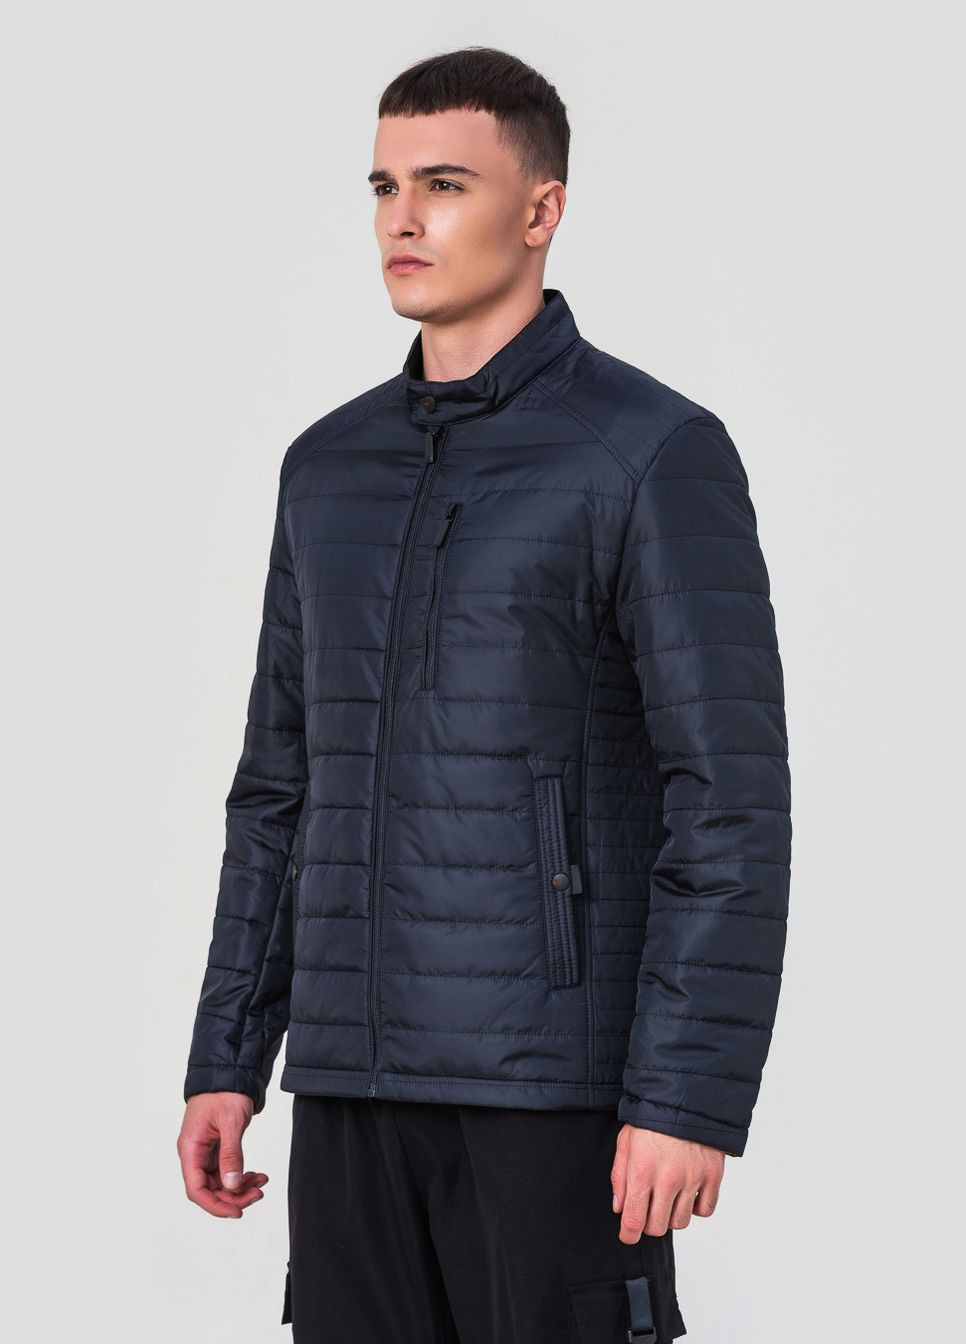 Синяя демисезонная куртка мужская модель 118 ZPJV